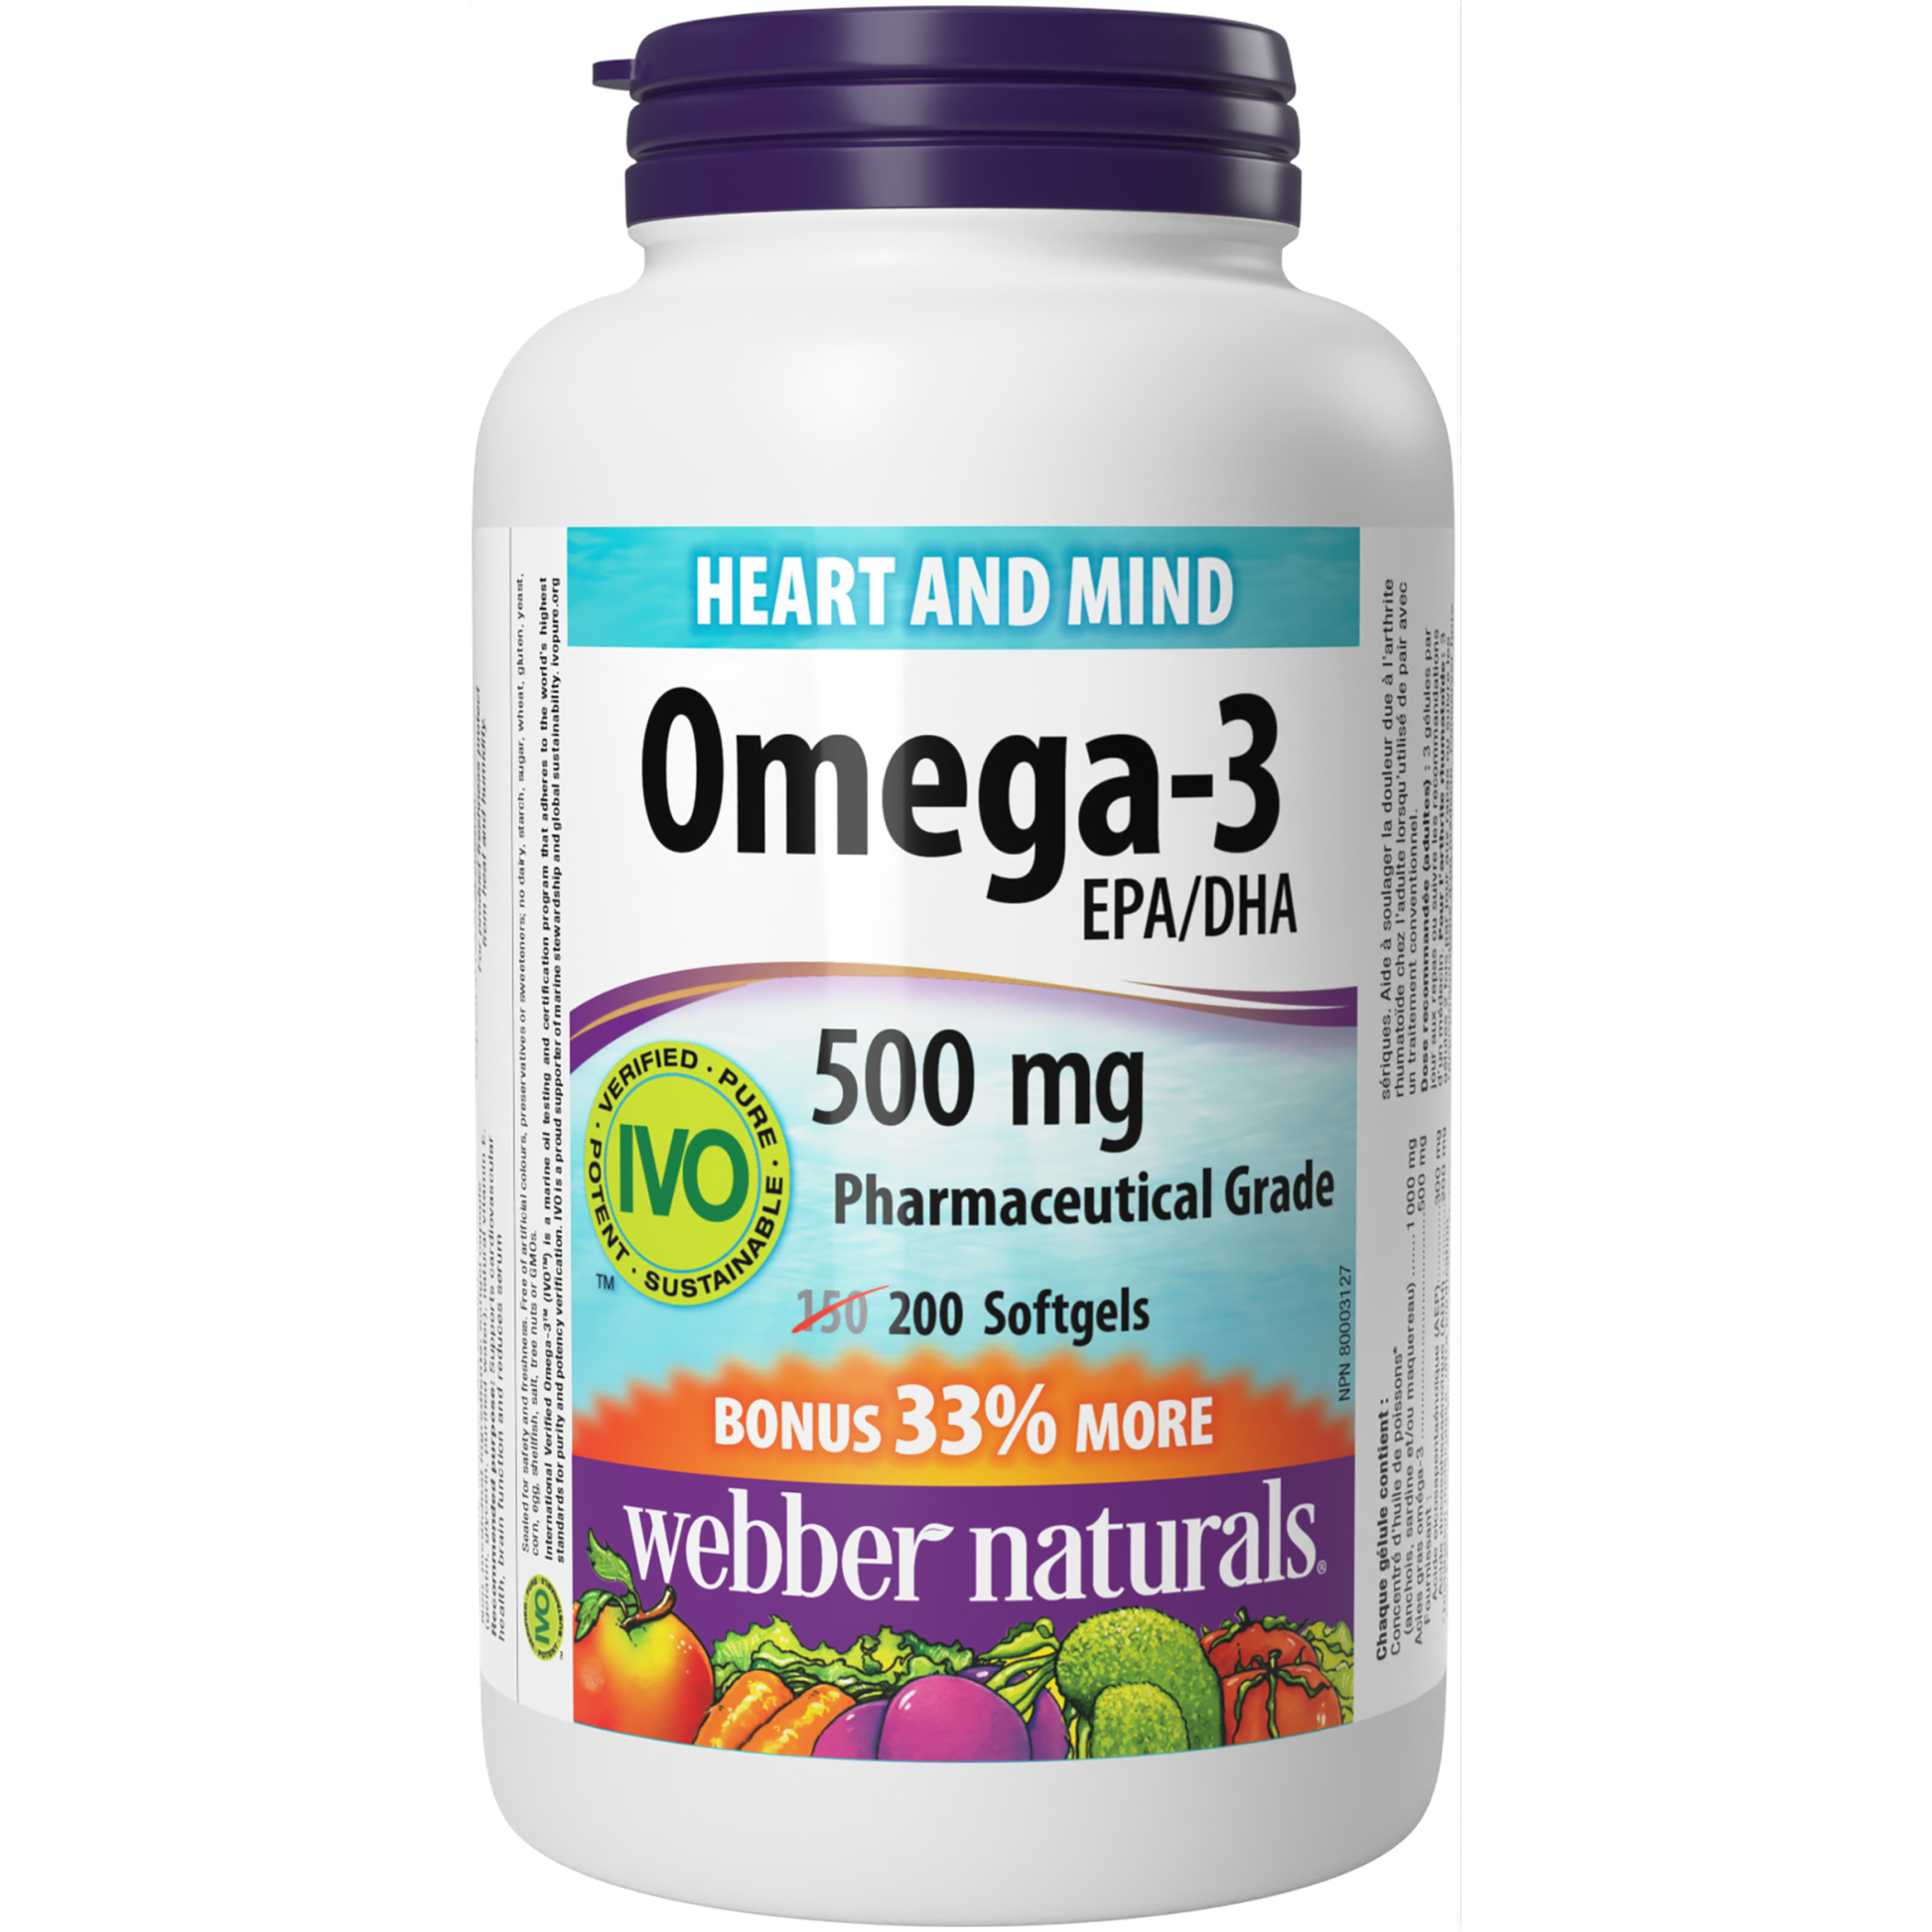 Omega-3 Pharmaceutical Grade 500 mg EPA/DHA for Webber Naturals|v|hi-res|WN3877